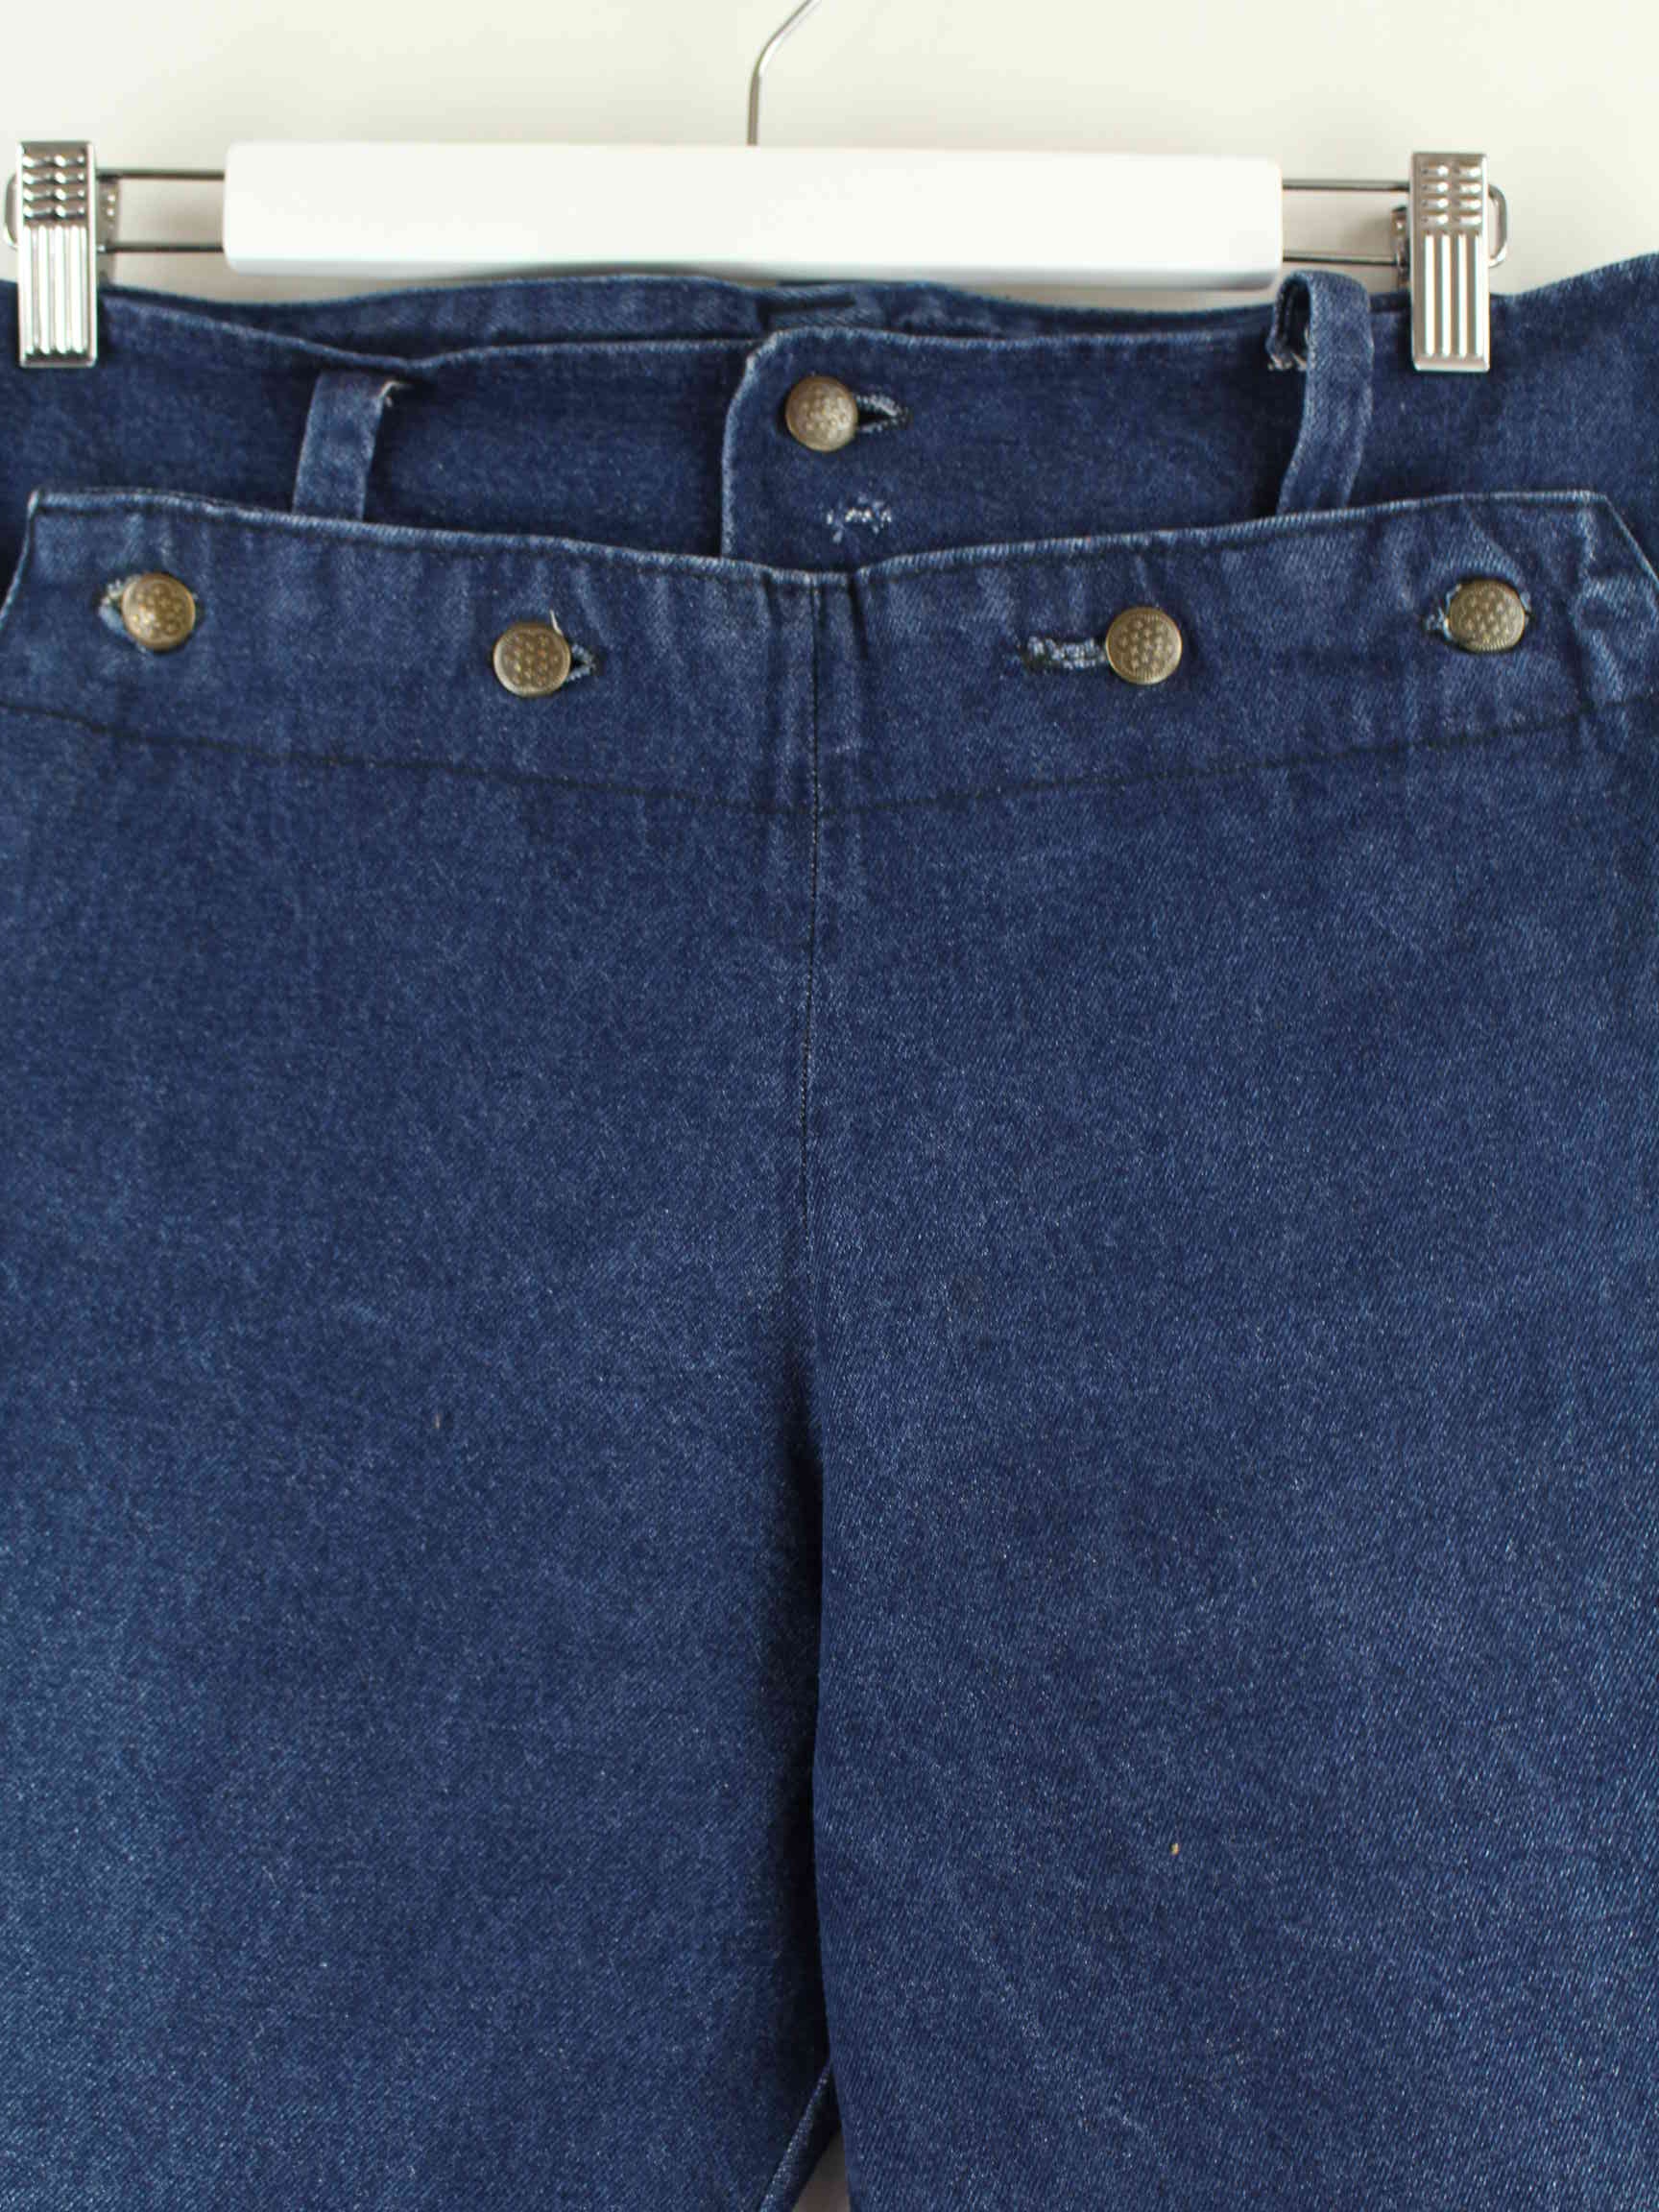 Vintage Damen 80s Jeans Blau W28 L30 (detail image 1)